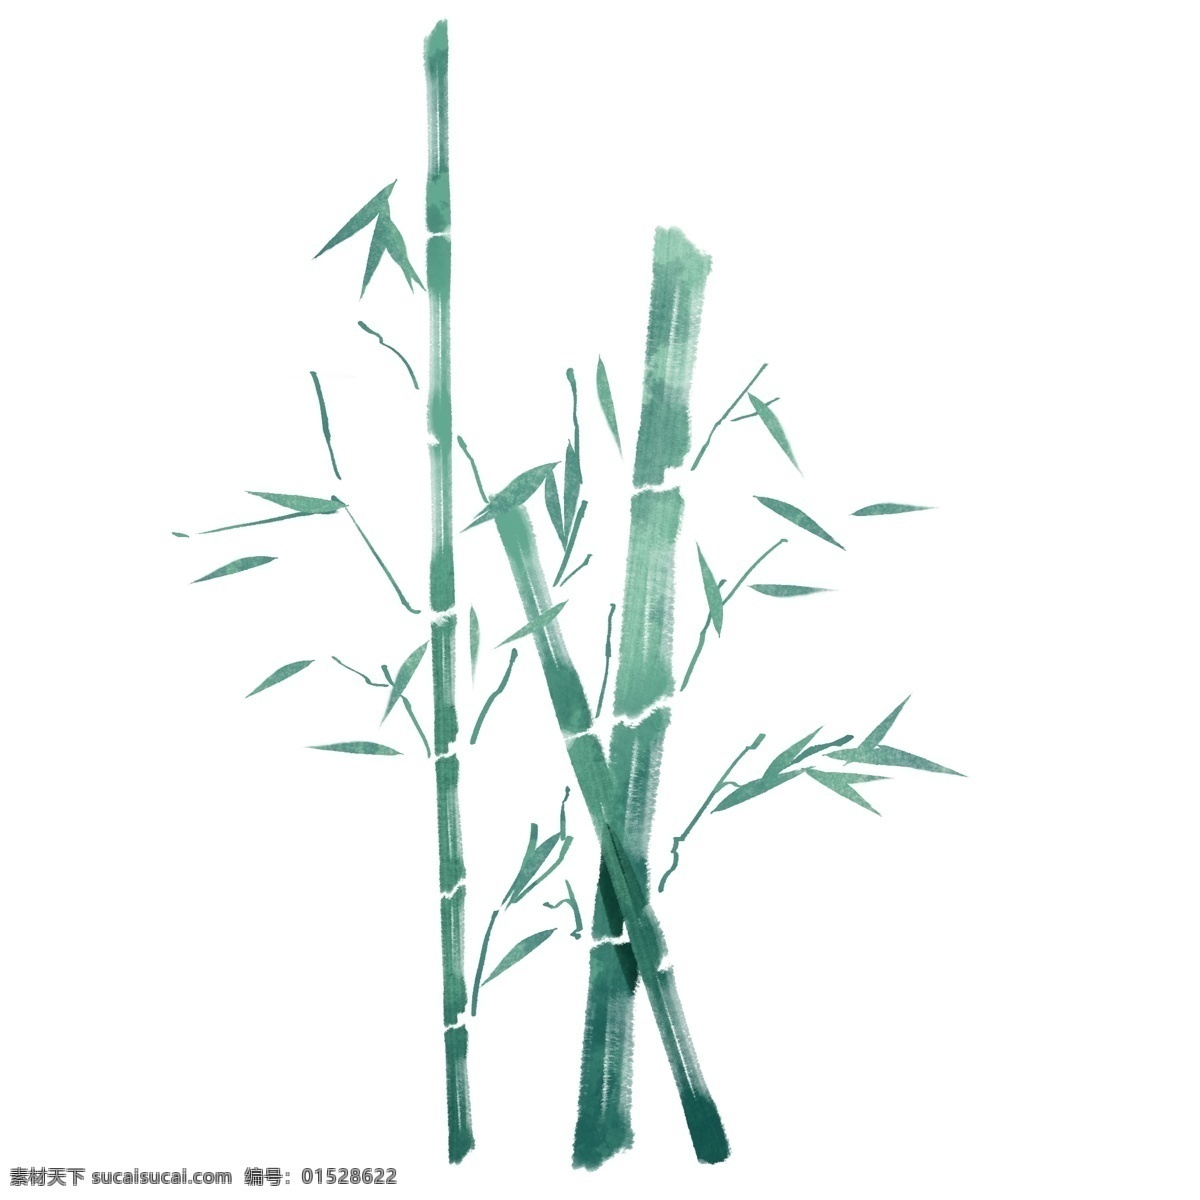 绿色 竹子 手绘 传 绿色的竹子 漂亮的竹子 手绘竹子 绿色的叶子 植物竹子 竹子装饰 竹子插画